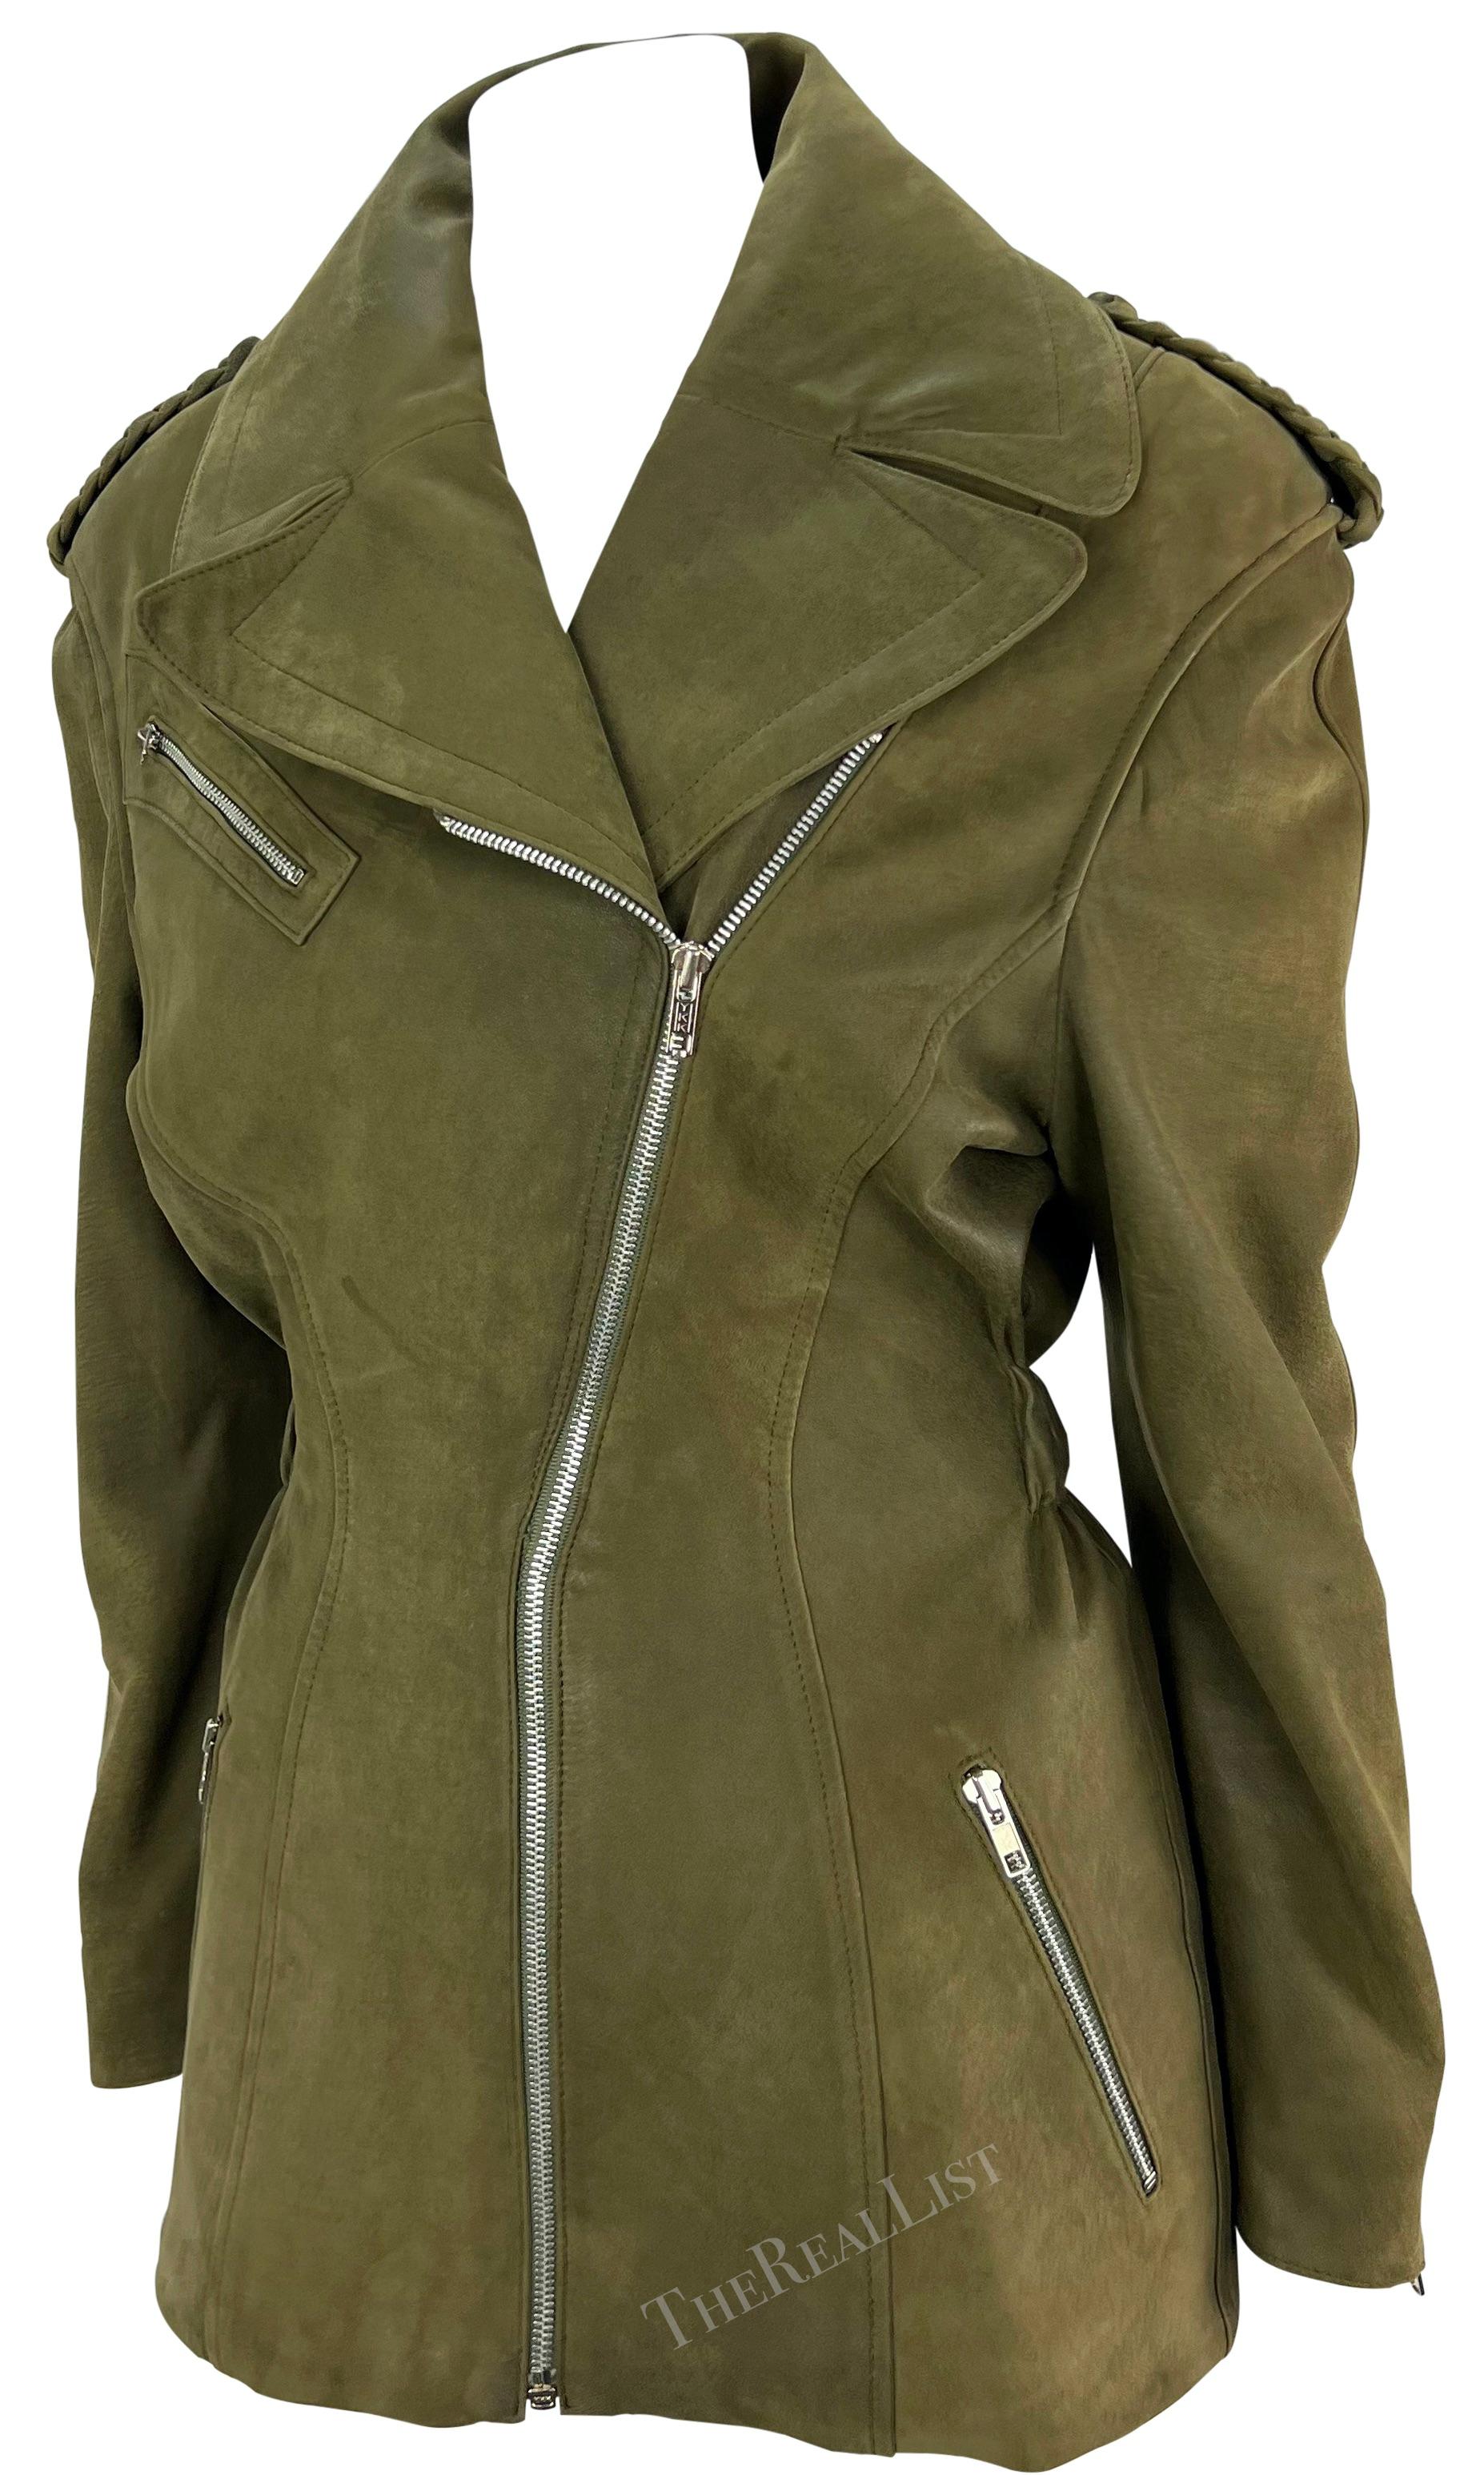 Cette veste de moto en daim vert olive de Thierry Mugler a été conçue par Manfred Mugler à la fin des années 1980. Entièrement réalisé en daim souple, ce manteau chic est doté d'un col Foldes, d'épaulettes tressées et d'une fermeture à glissière